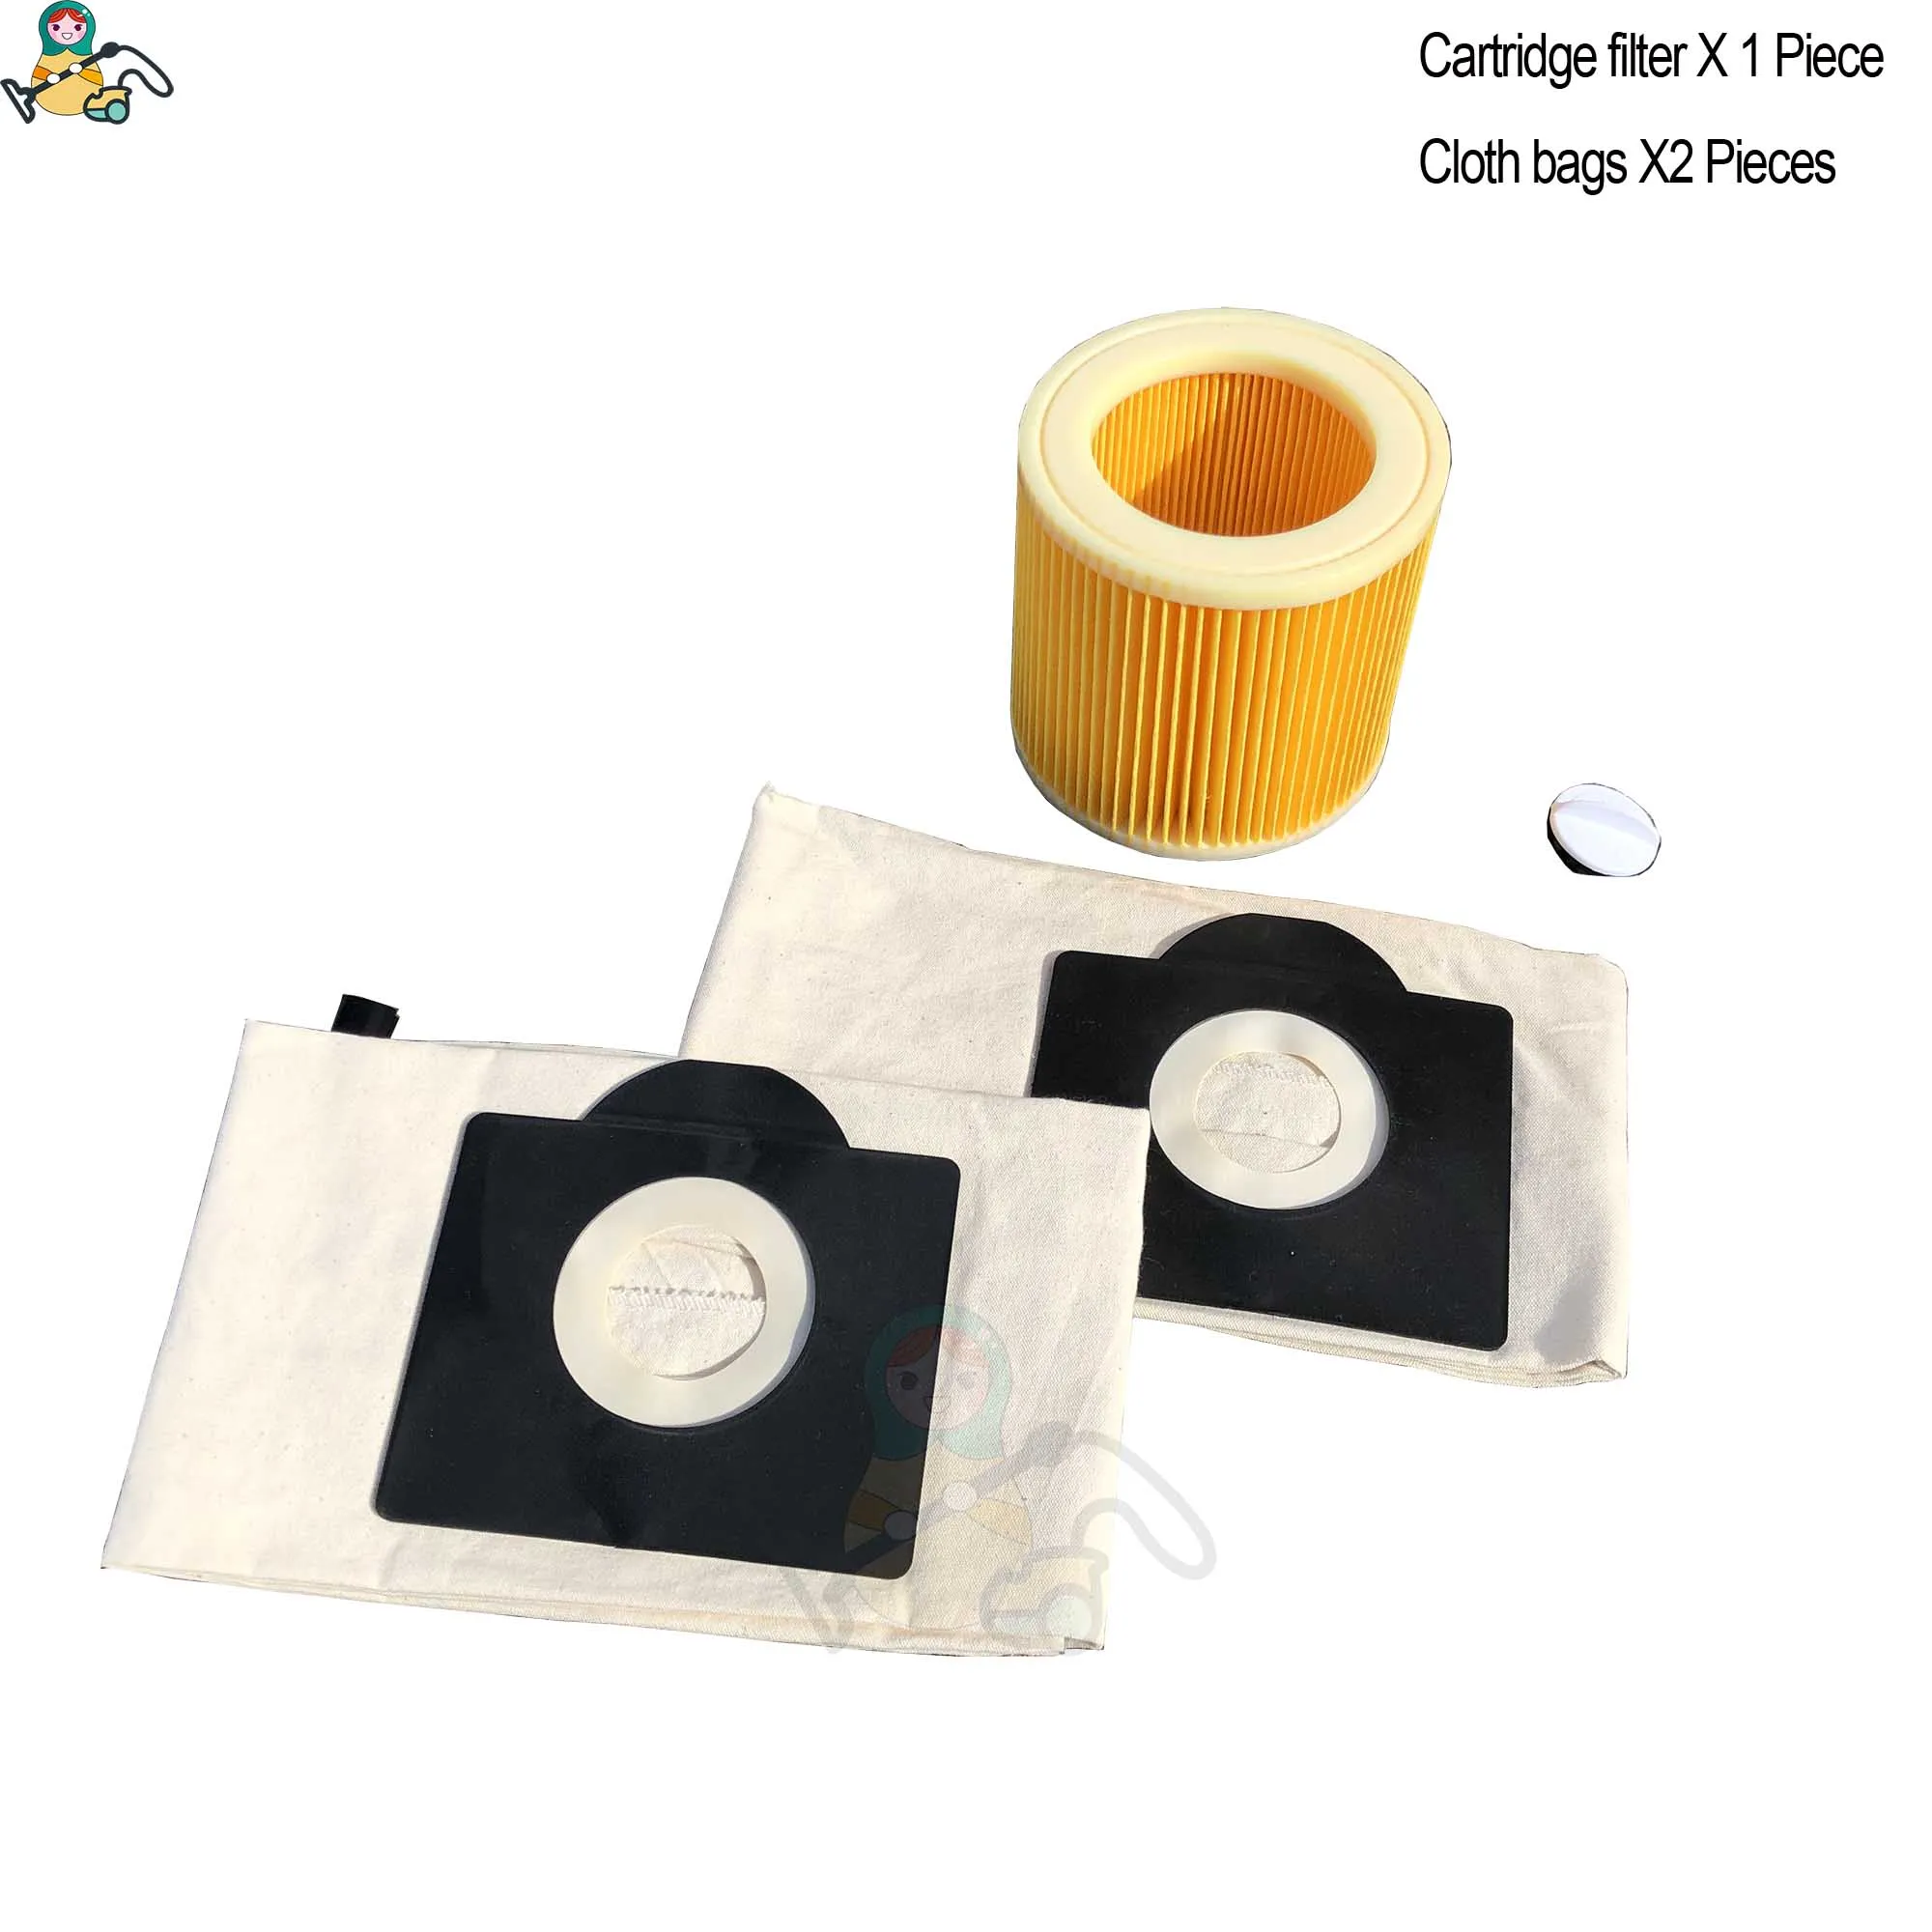 Сменные Мешки Для Пыли Картридж фильтр для KARCHER WD3 P WD 3,300 M WD 3,200 WD3.500 SE 4001 SE 4002 6,959-130 пылесос - Color: KAR-WD3-COM-3PK